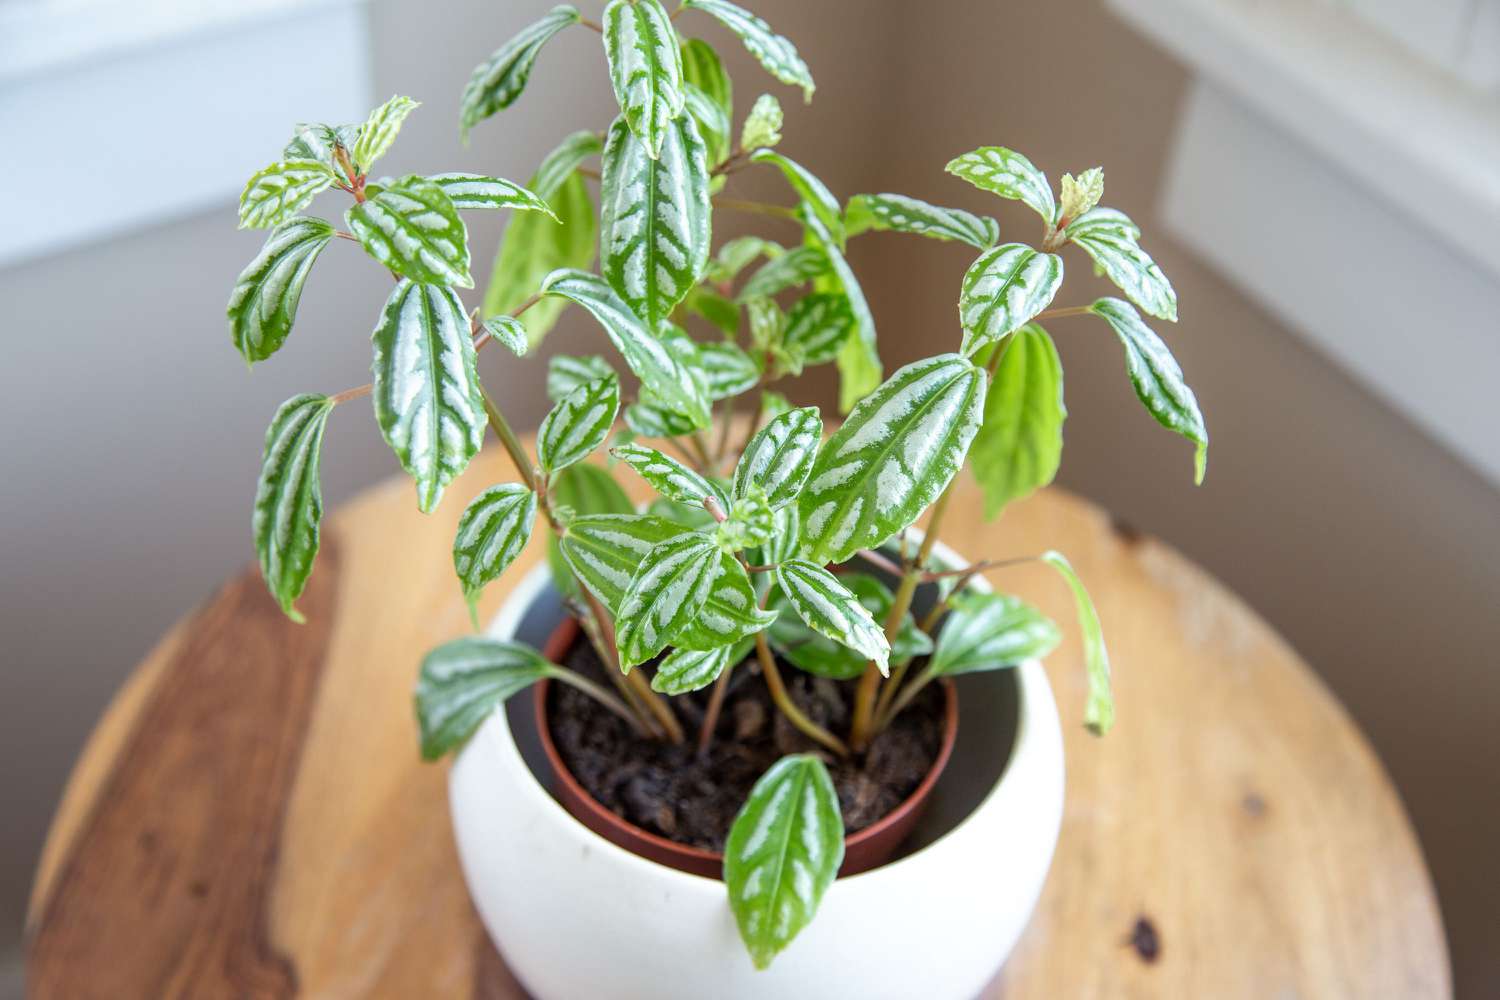 Plante en aluminium dans un pot blanc avec des feuilles argentées et vertes panachées